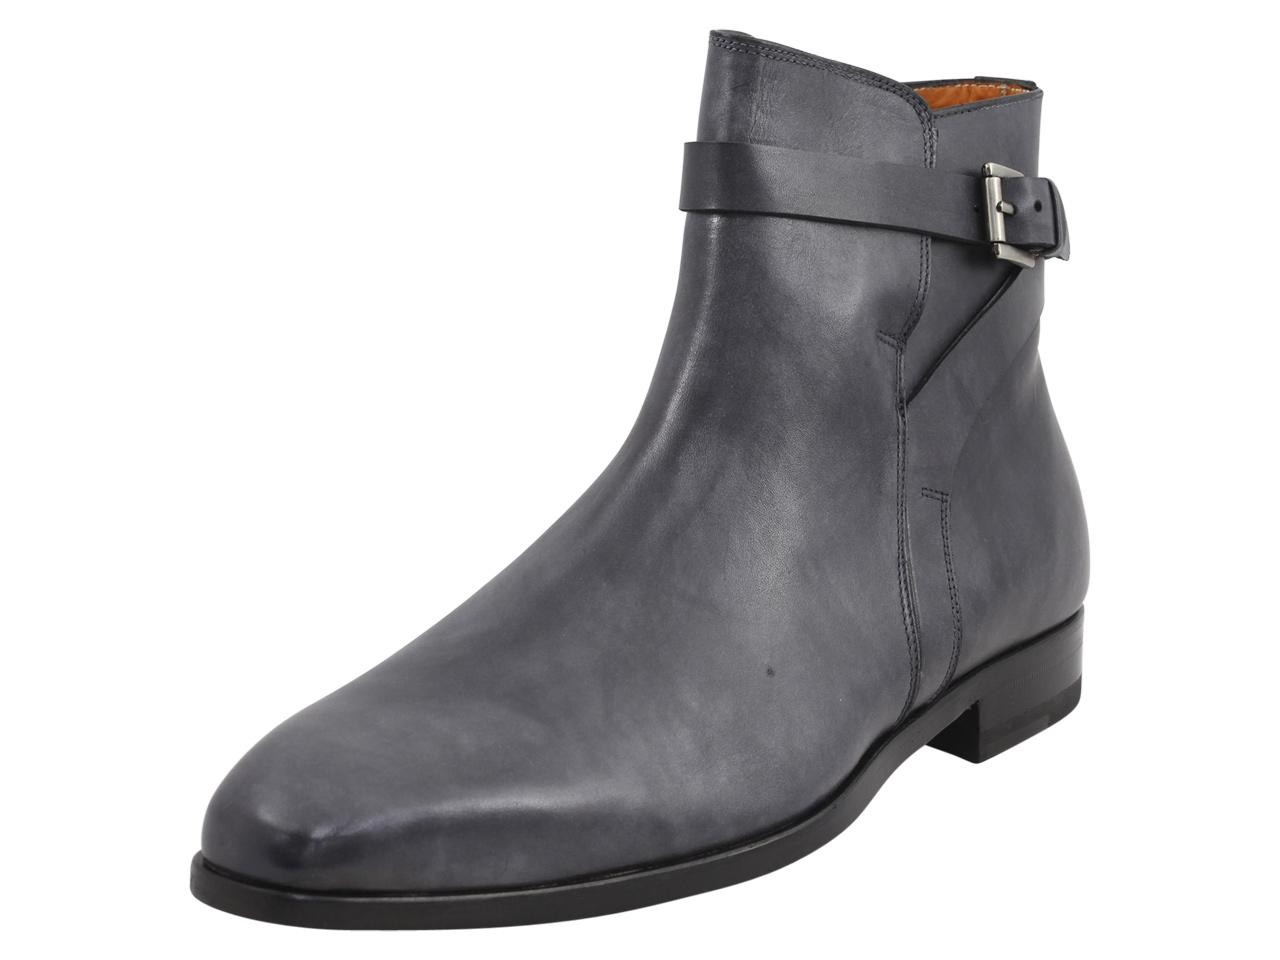 Mezlan Men's Viso Leather Ankle Boots Shoes - Black - 8.5 D(M) US